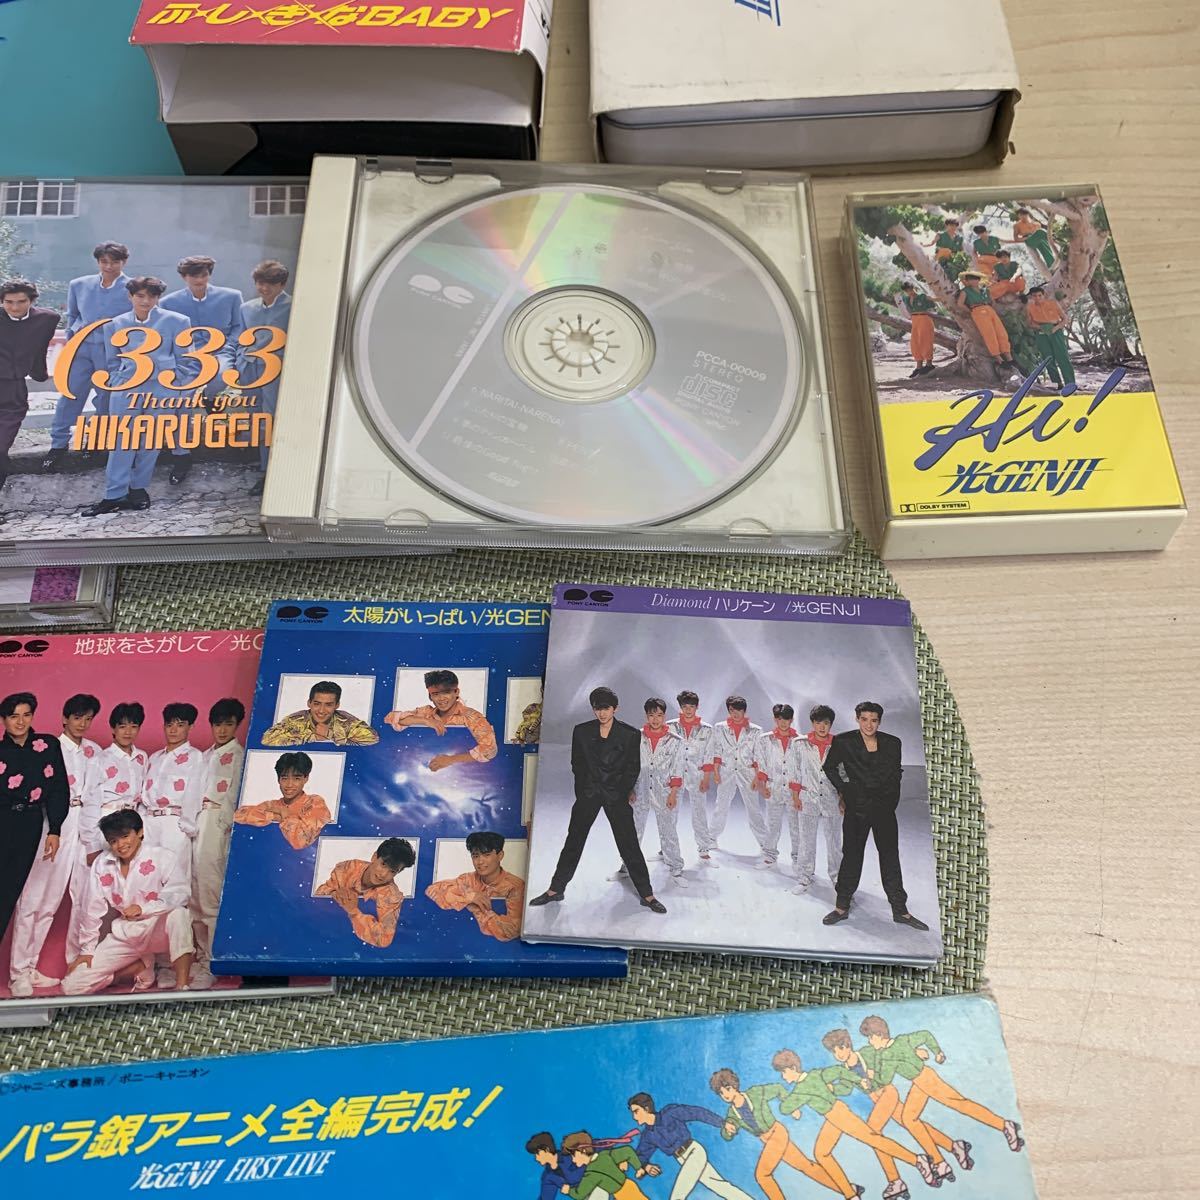 [ б/у товар ] свет GENJI CD кассета VHS 16 пункт . суммировать Johnny's Showa идол различные звезда мир . большой .. сырой внутри море свет .